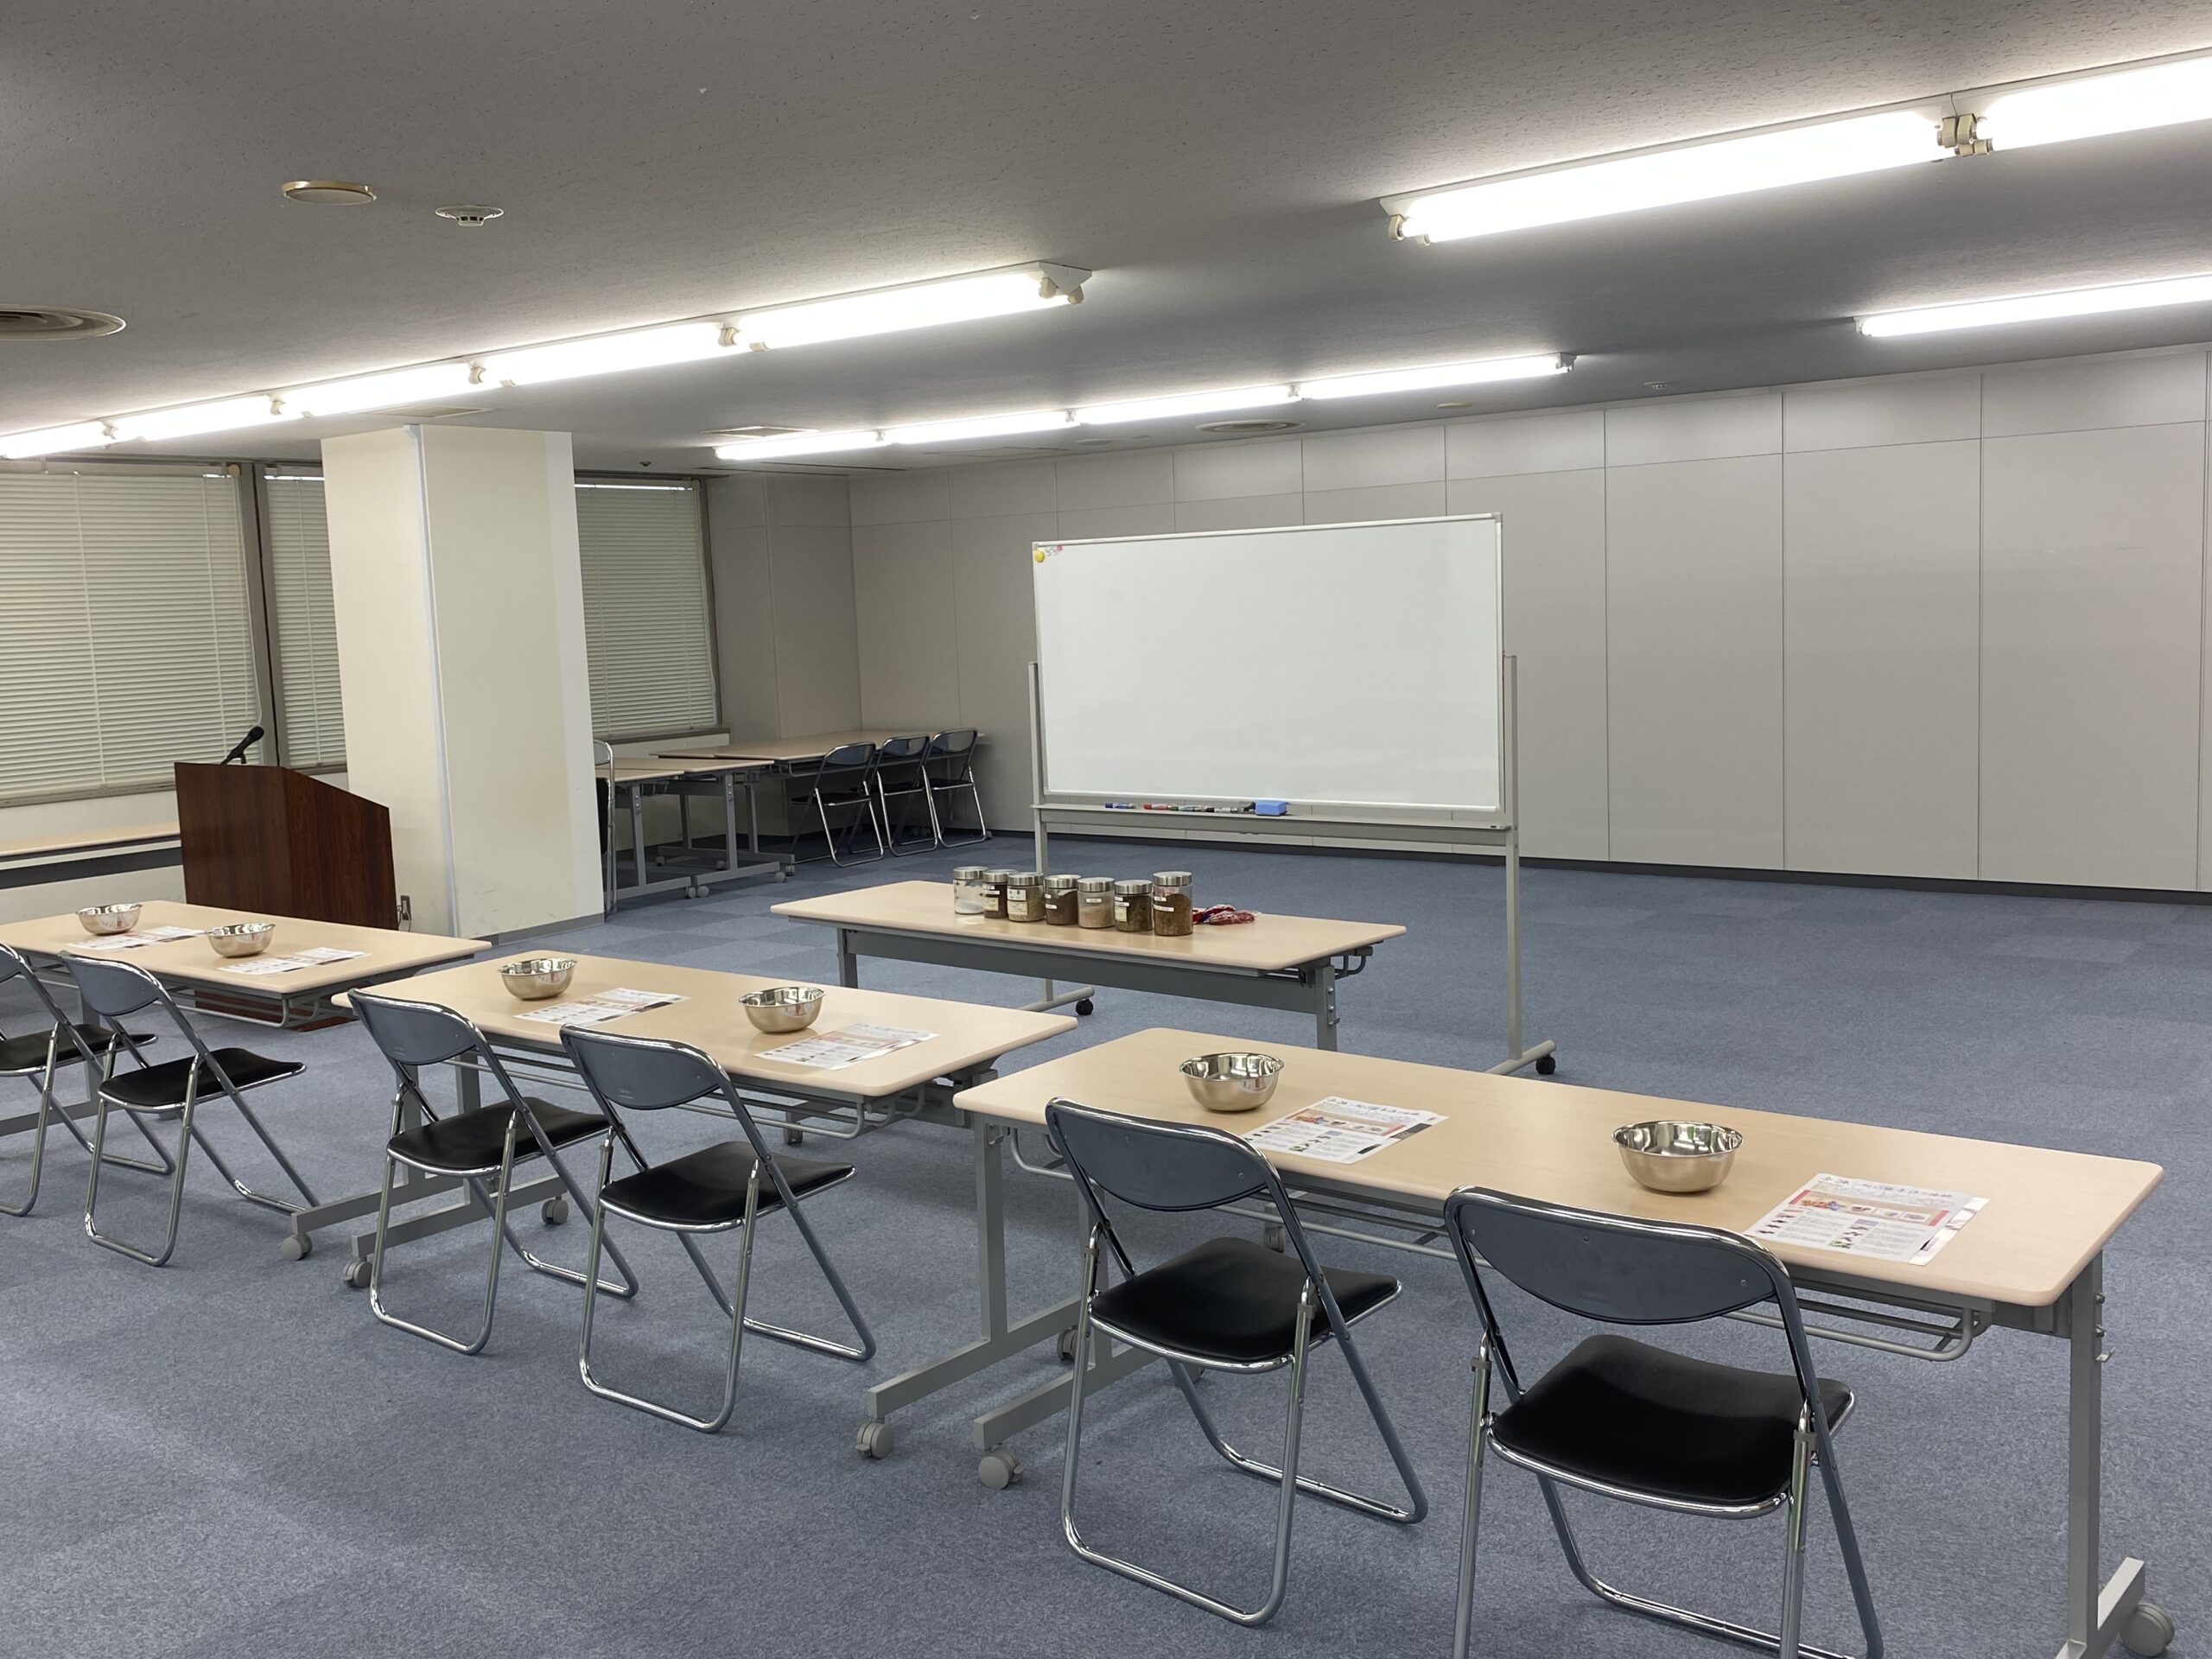 日本生命様へ匂い袋制作体験の出張講座へ行って参りました。2022年10月5日【香源 上野桜木店】